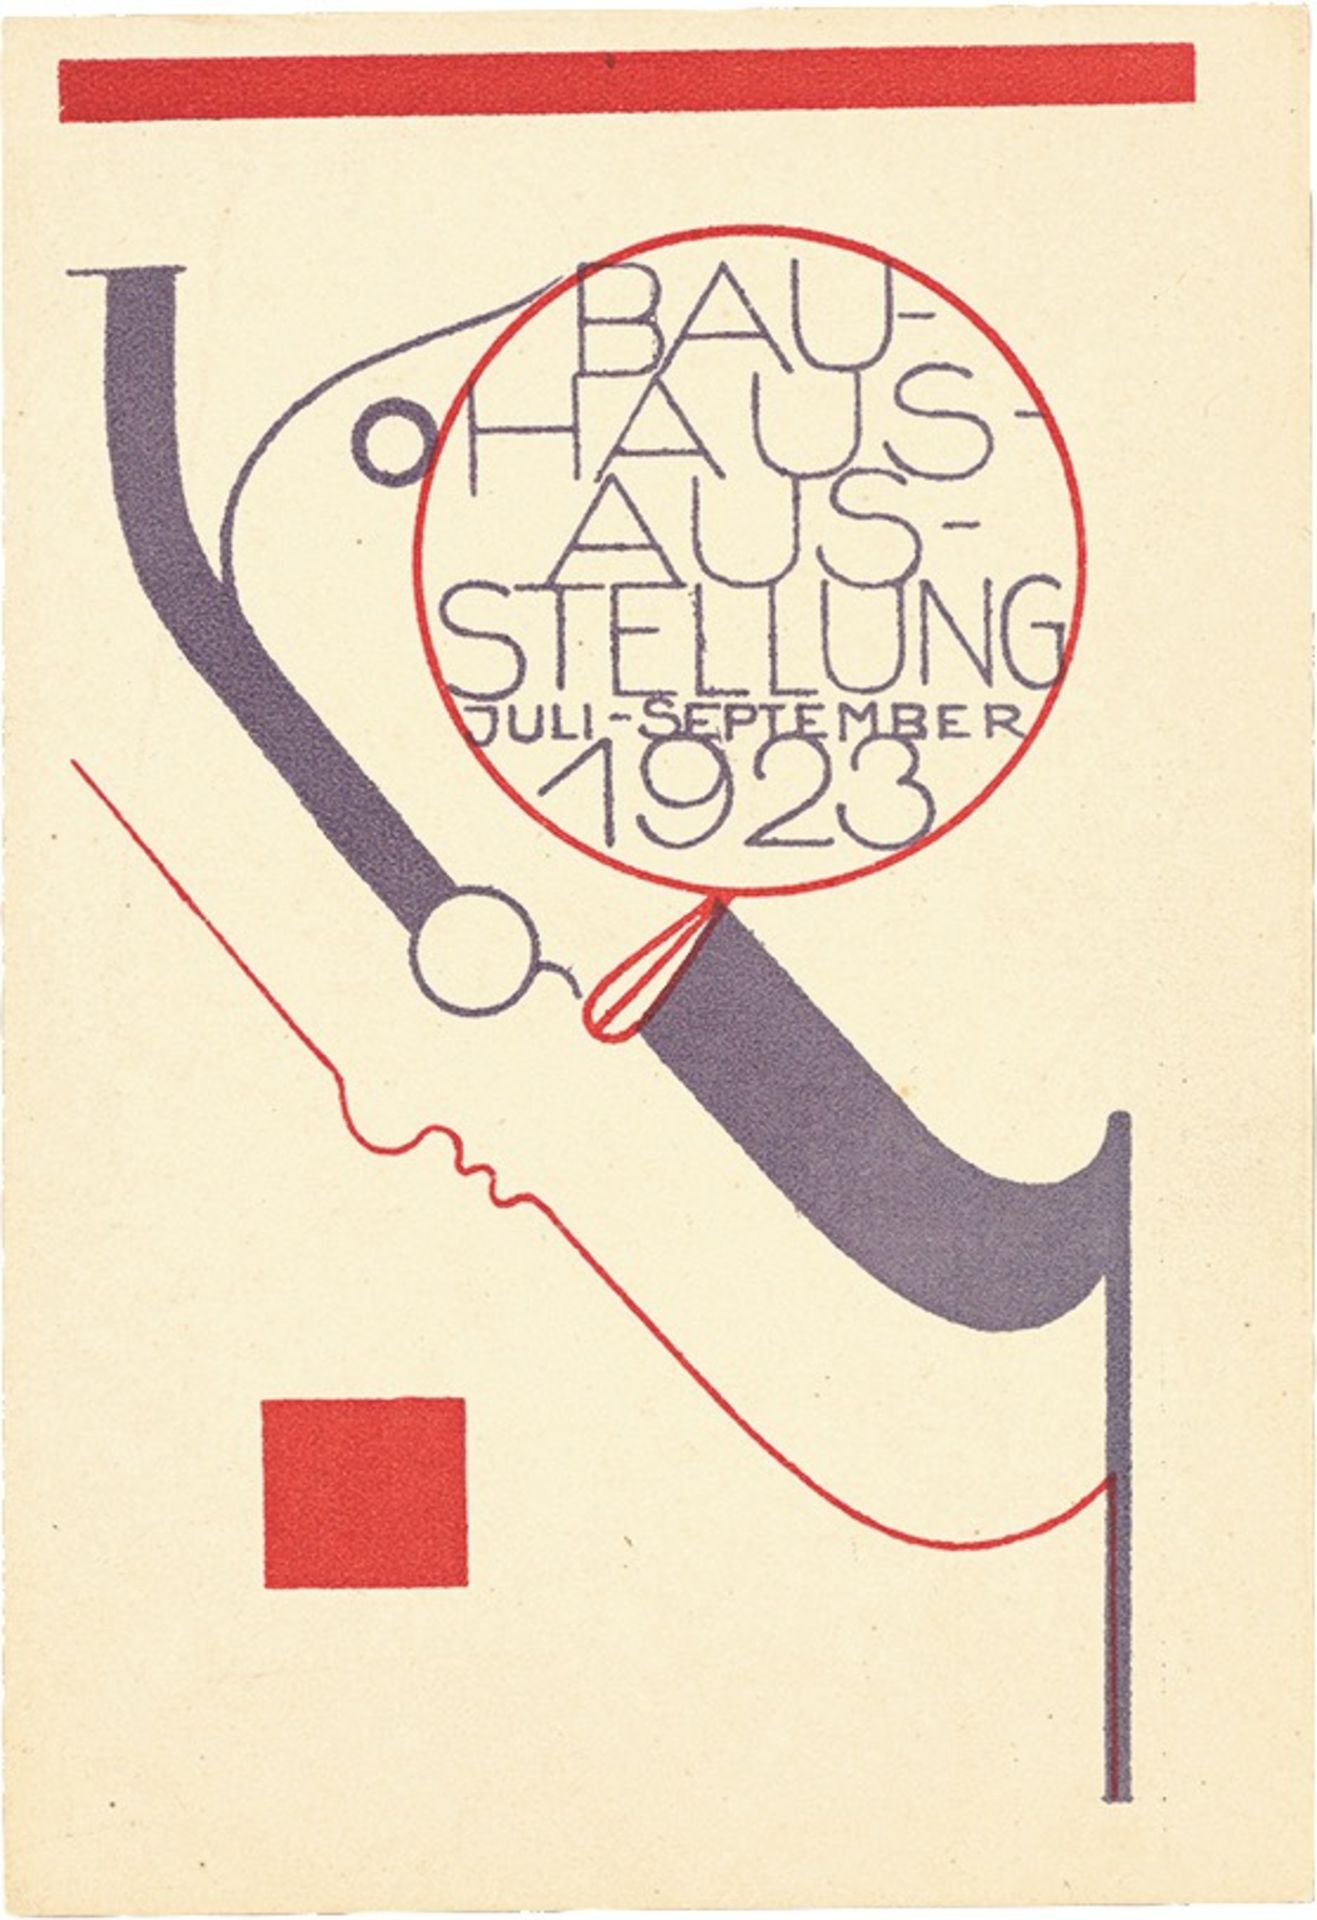 Bauhaus. ”Ausstellung Weimar 1923” – 20 postcards by various Bauhaus artists. 1923 - Image 8 of 20